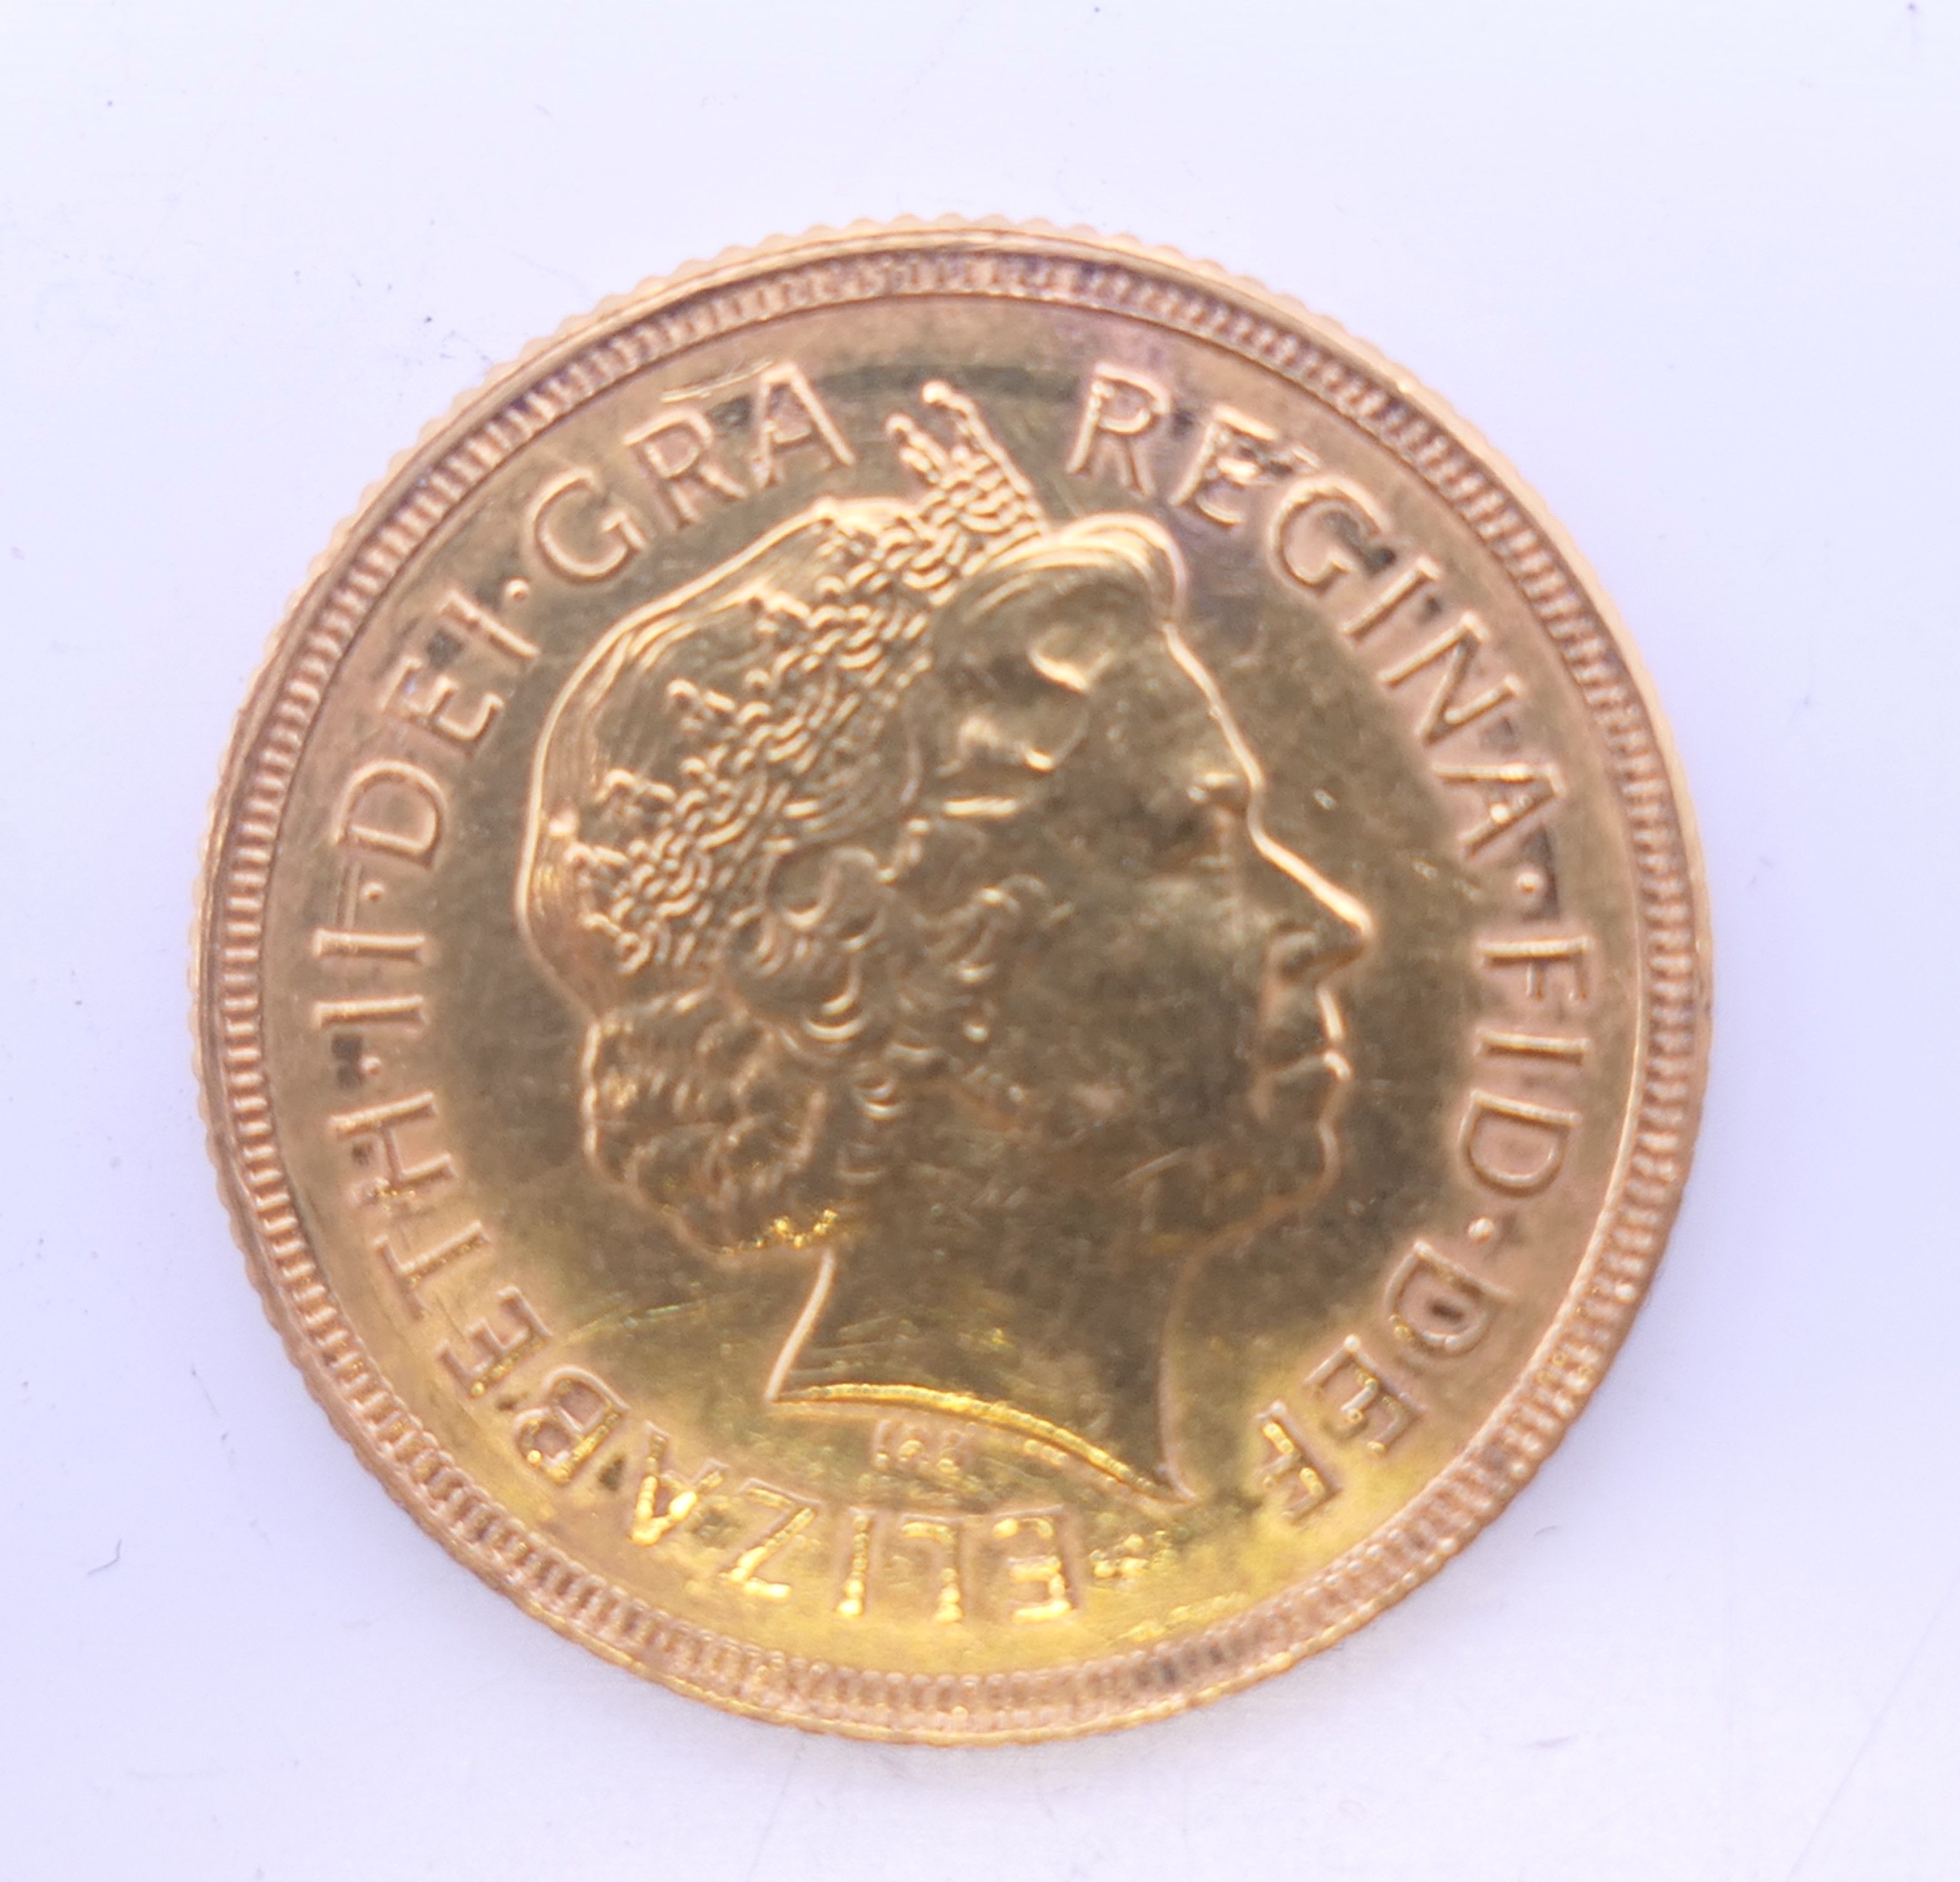 A 2000 gold sovereign.